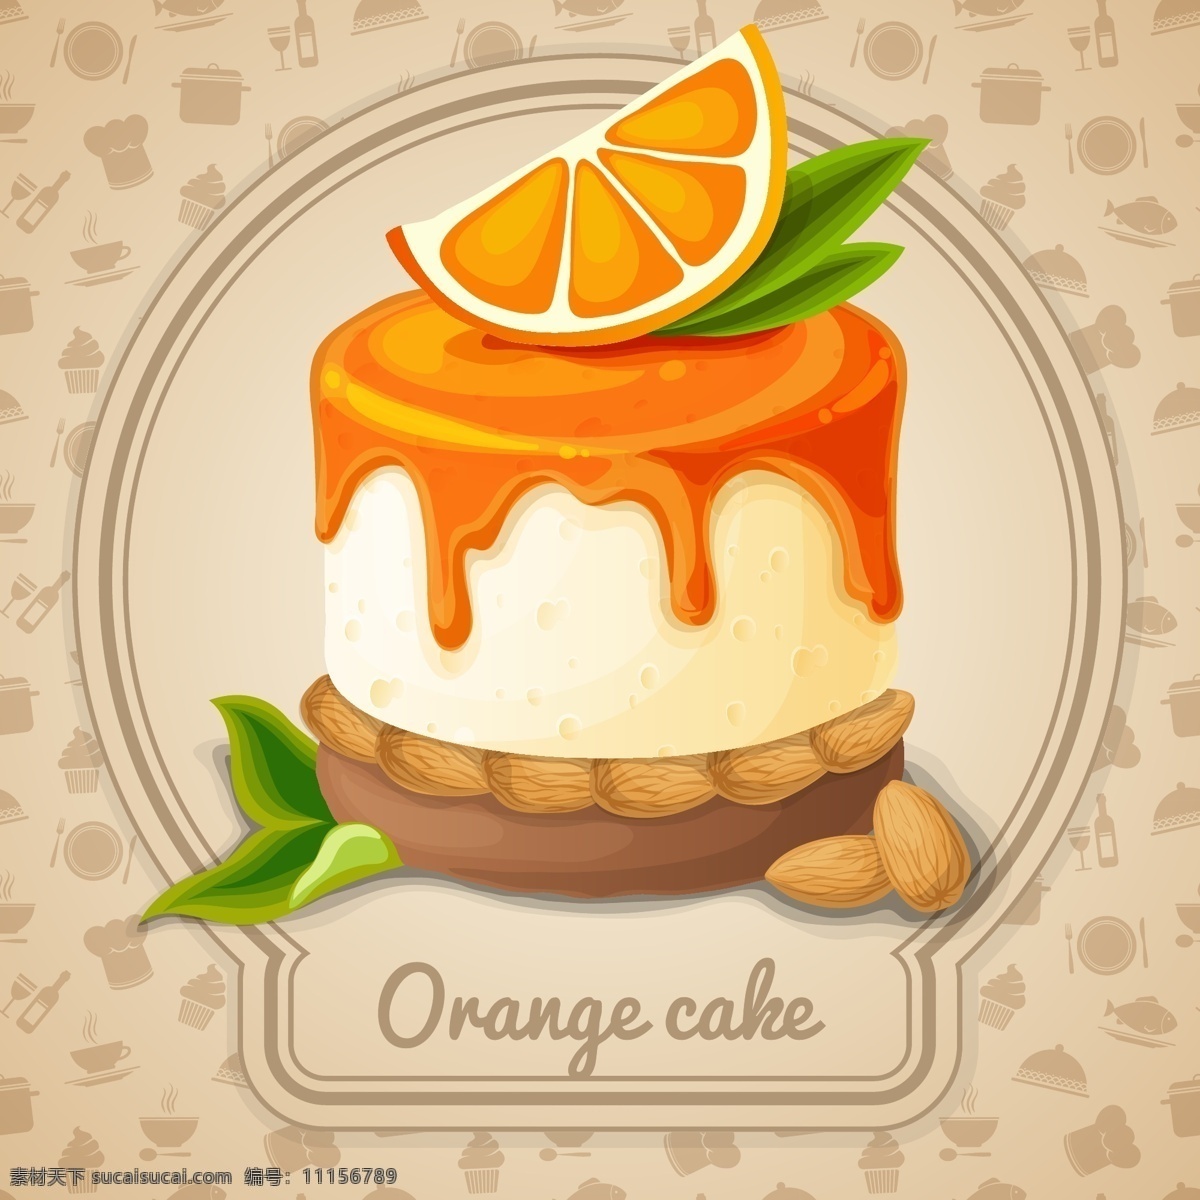 美味 橙子 蛋糕 甜品 水果 黄色